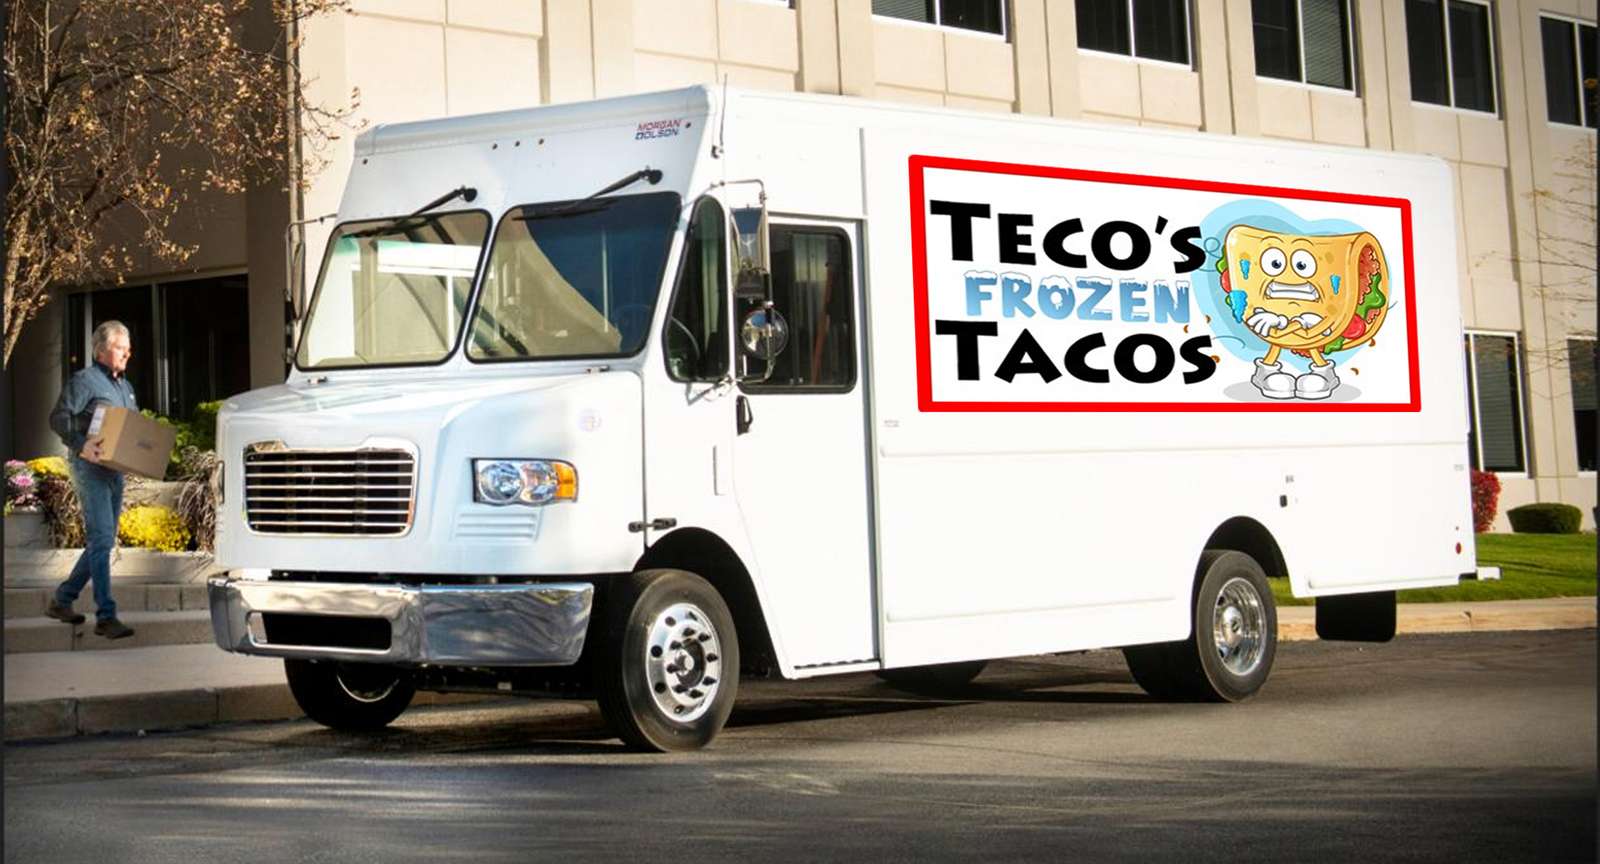 Le camion à tacos de Teco puzzle en ligne à partir d'une photo